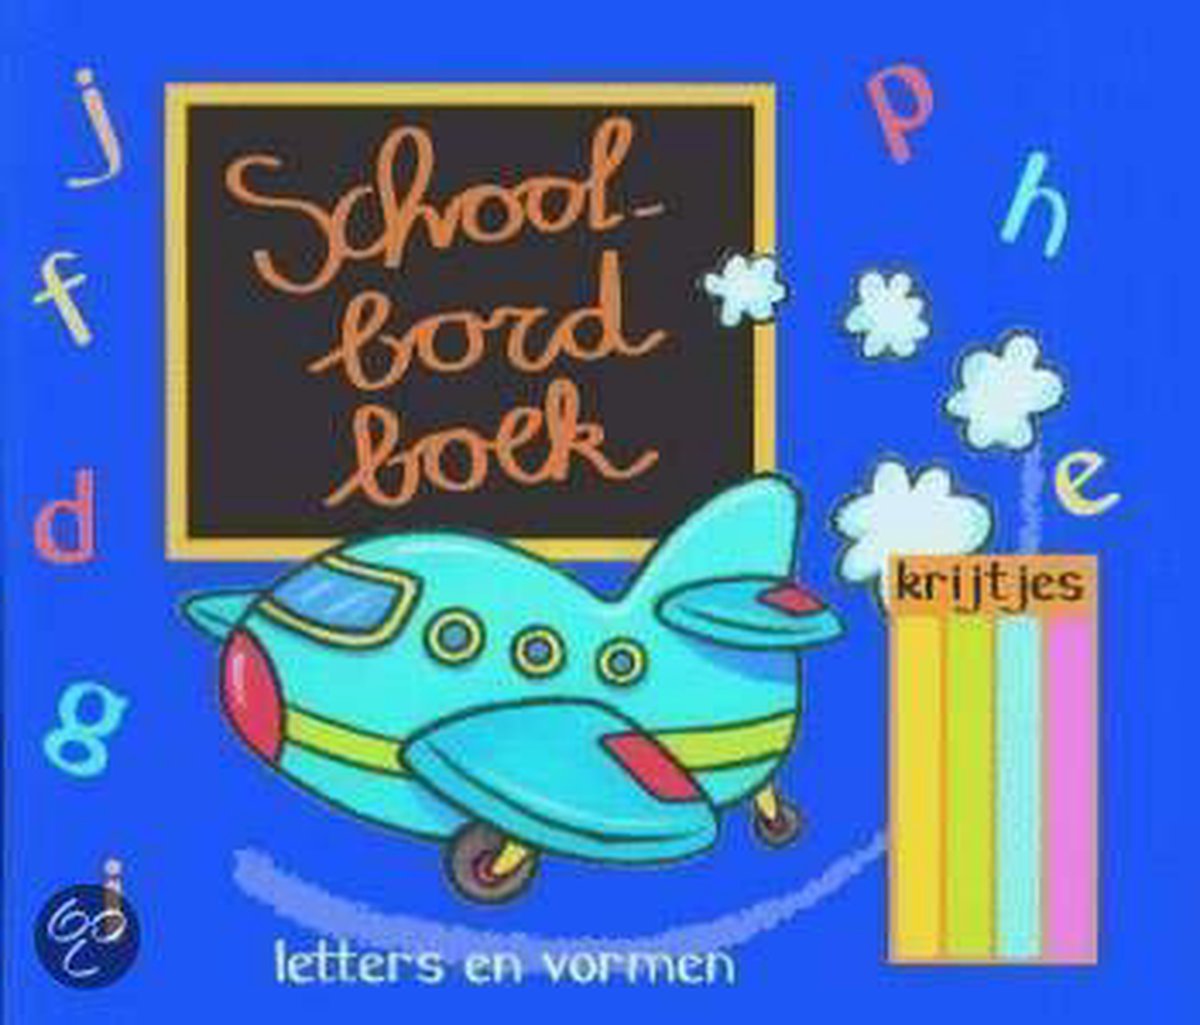 Schoolbordboek Letters En Vormen